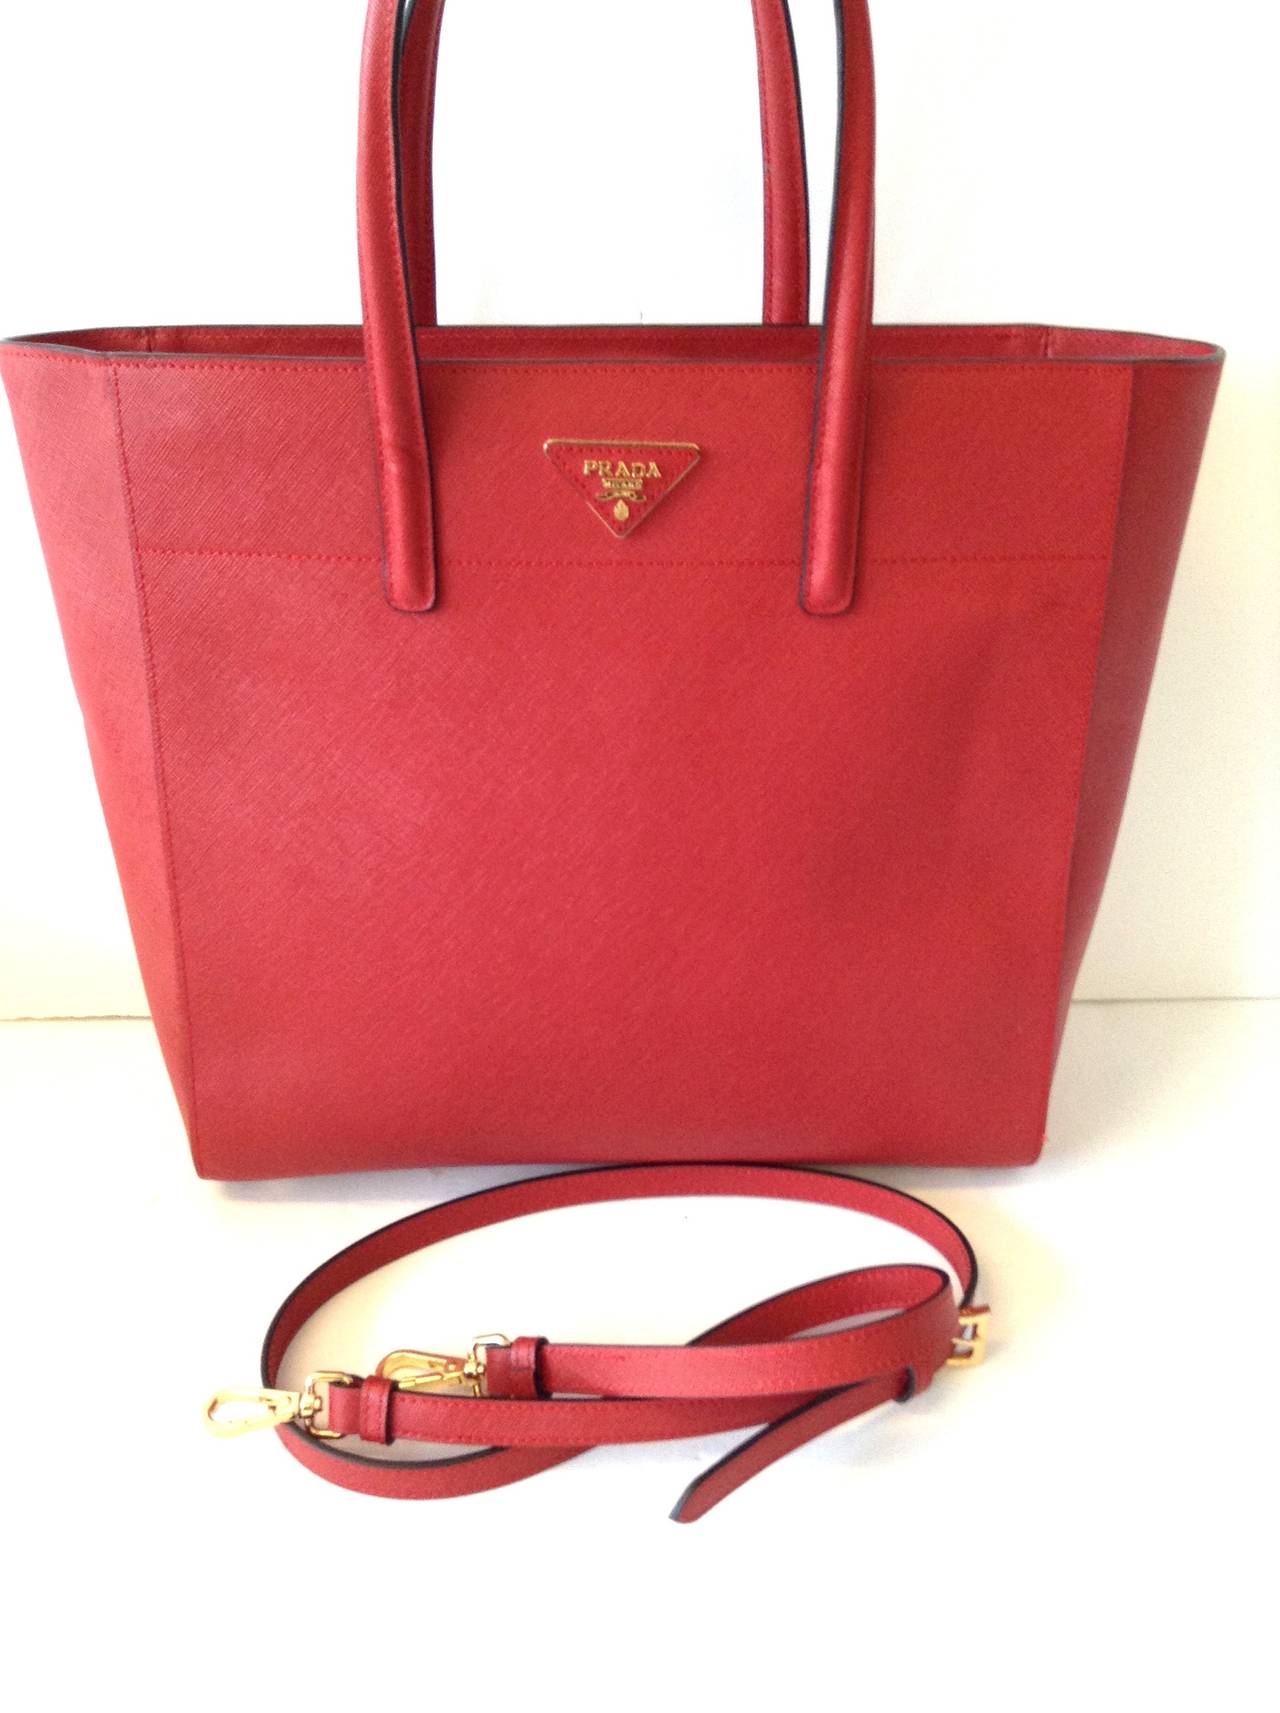 2013 PRADA Saffiano Trapeze tote bag in Lipstick Red GHW $1800 For Sale 1